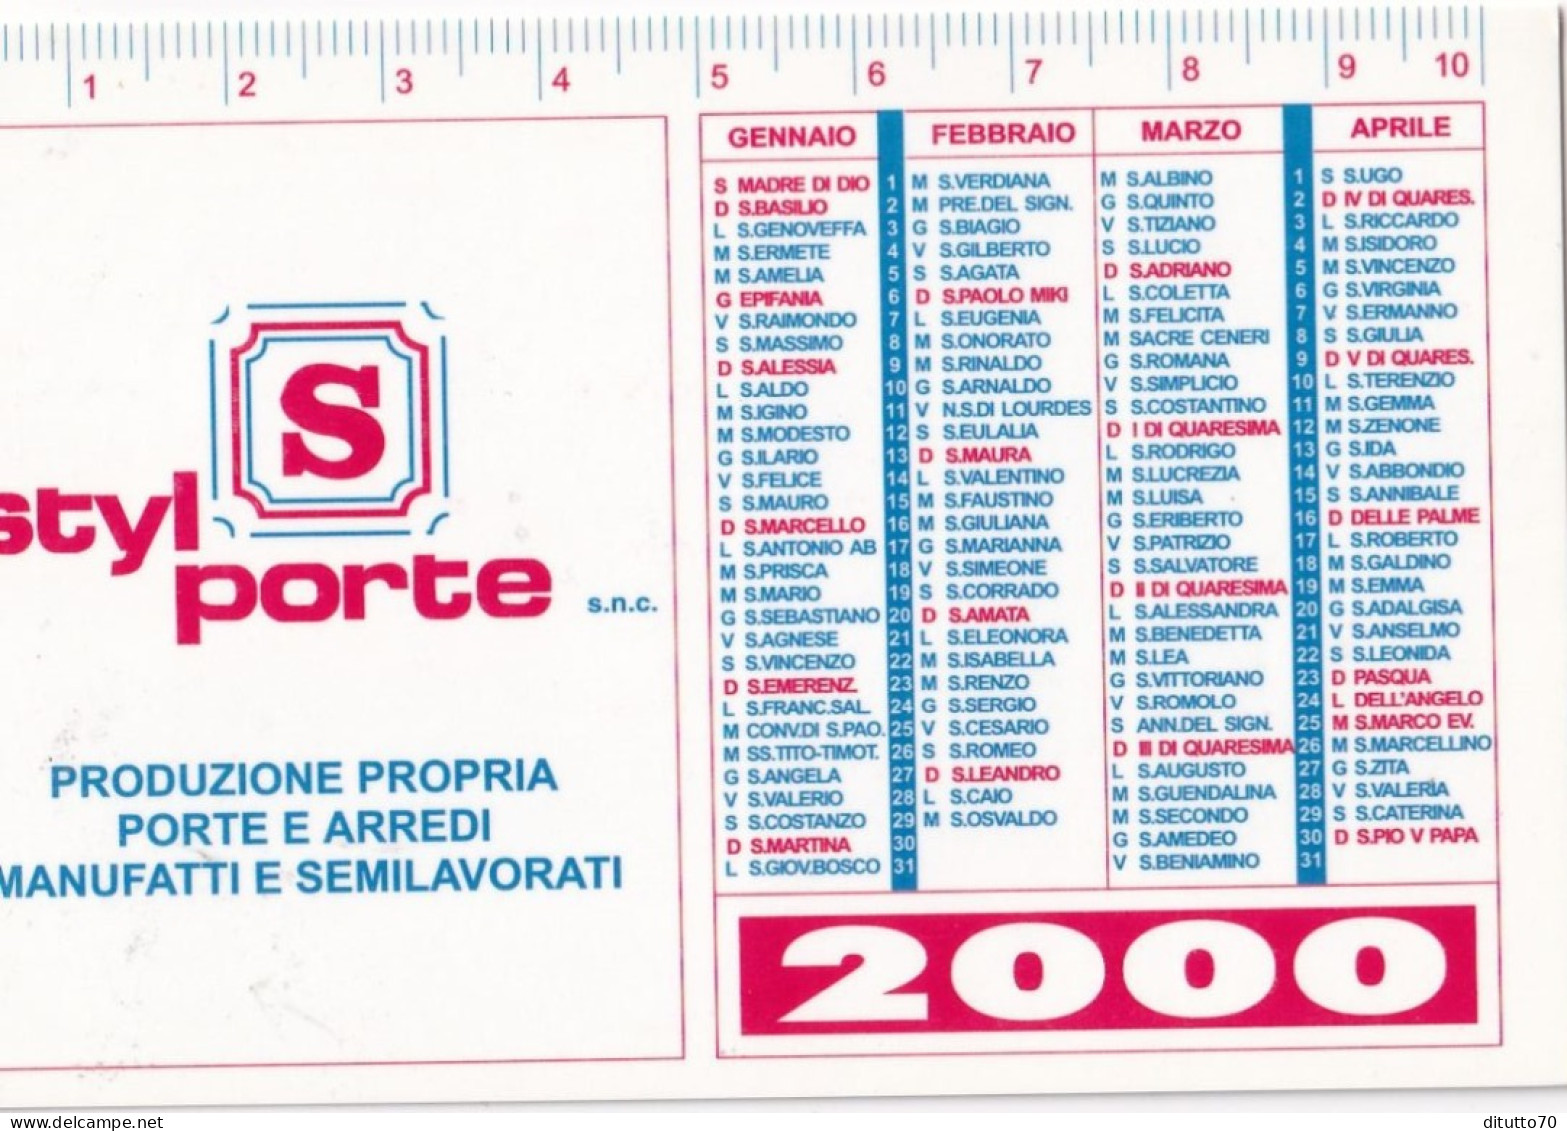 Calendarietto - Styl Porte - Rivalta - Torino - Anno 2000 - Formato Piccolo : 1991-00